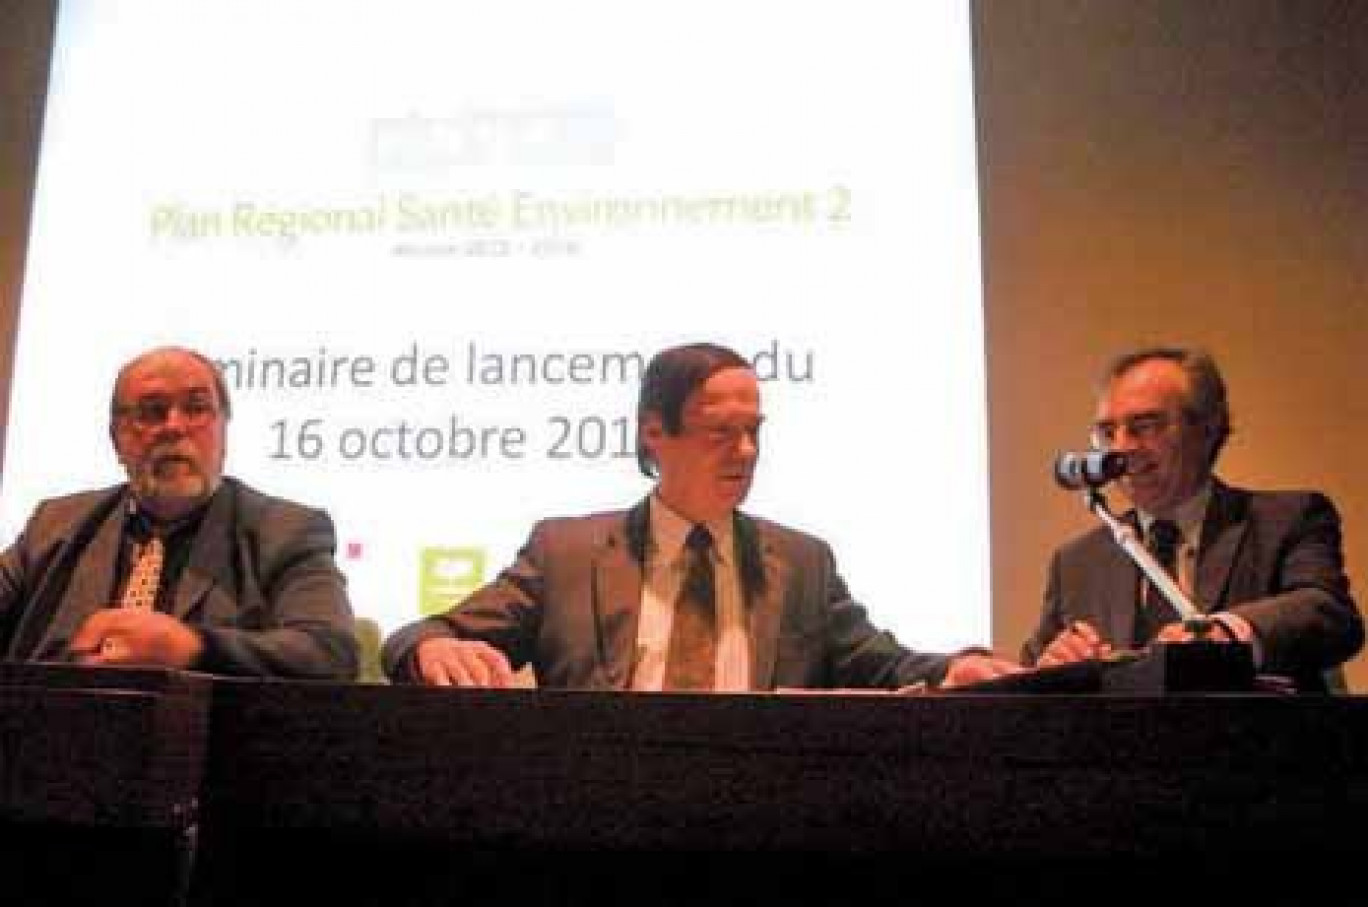 Didier Cardon, Jean-François Cordet et Christian Dubosq ont signé le Plan régional santé environnement 2 avant l’ouverture du séminaire.